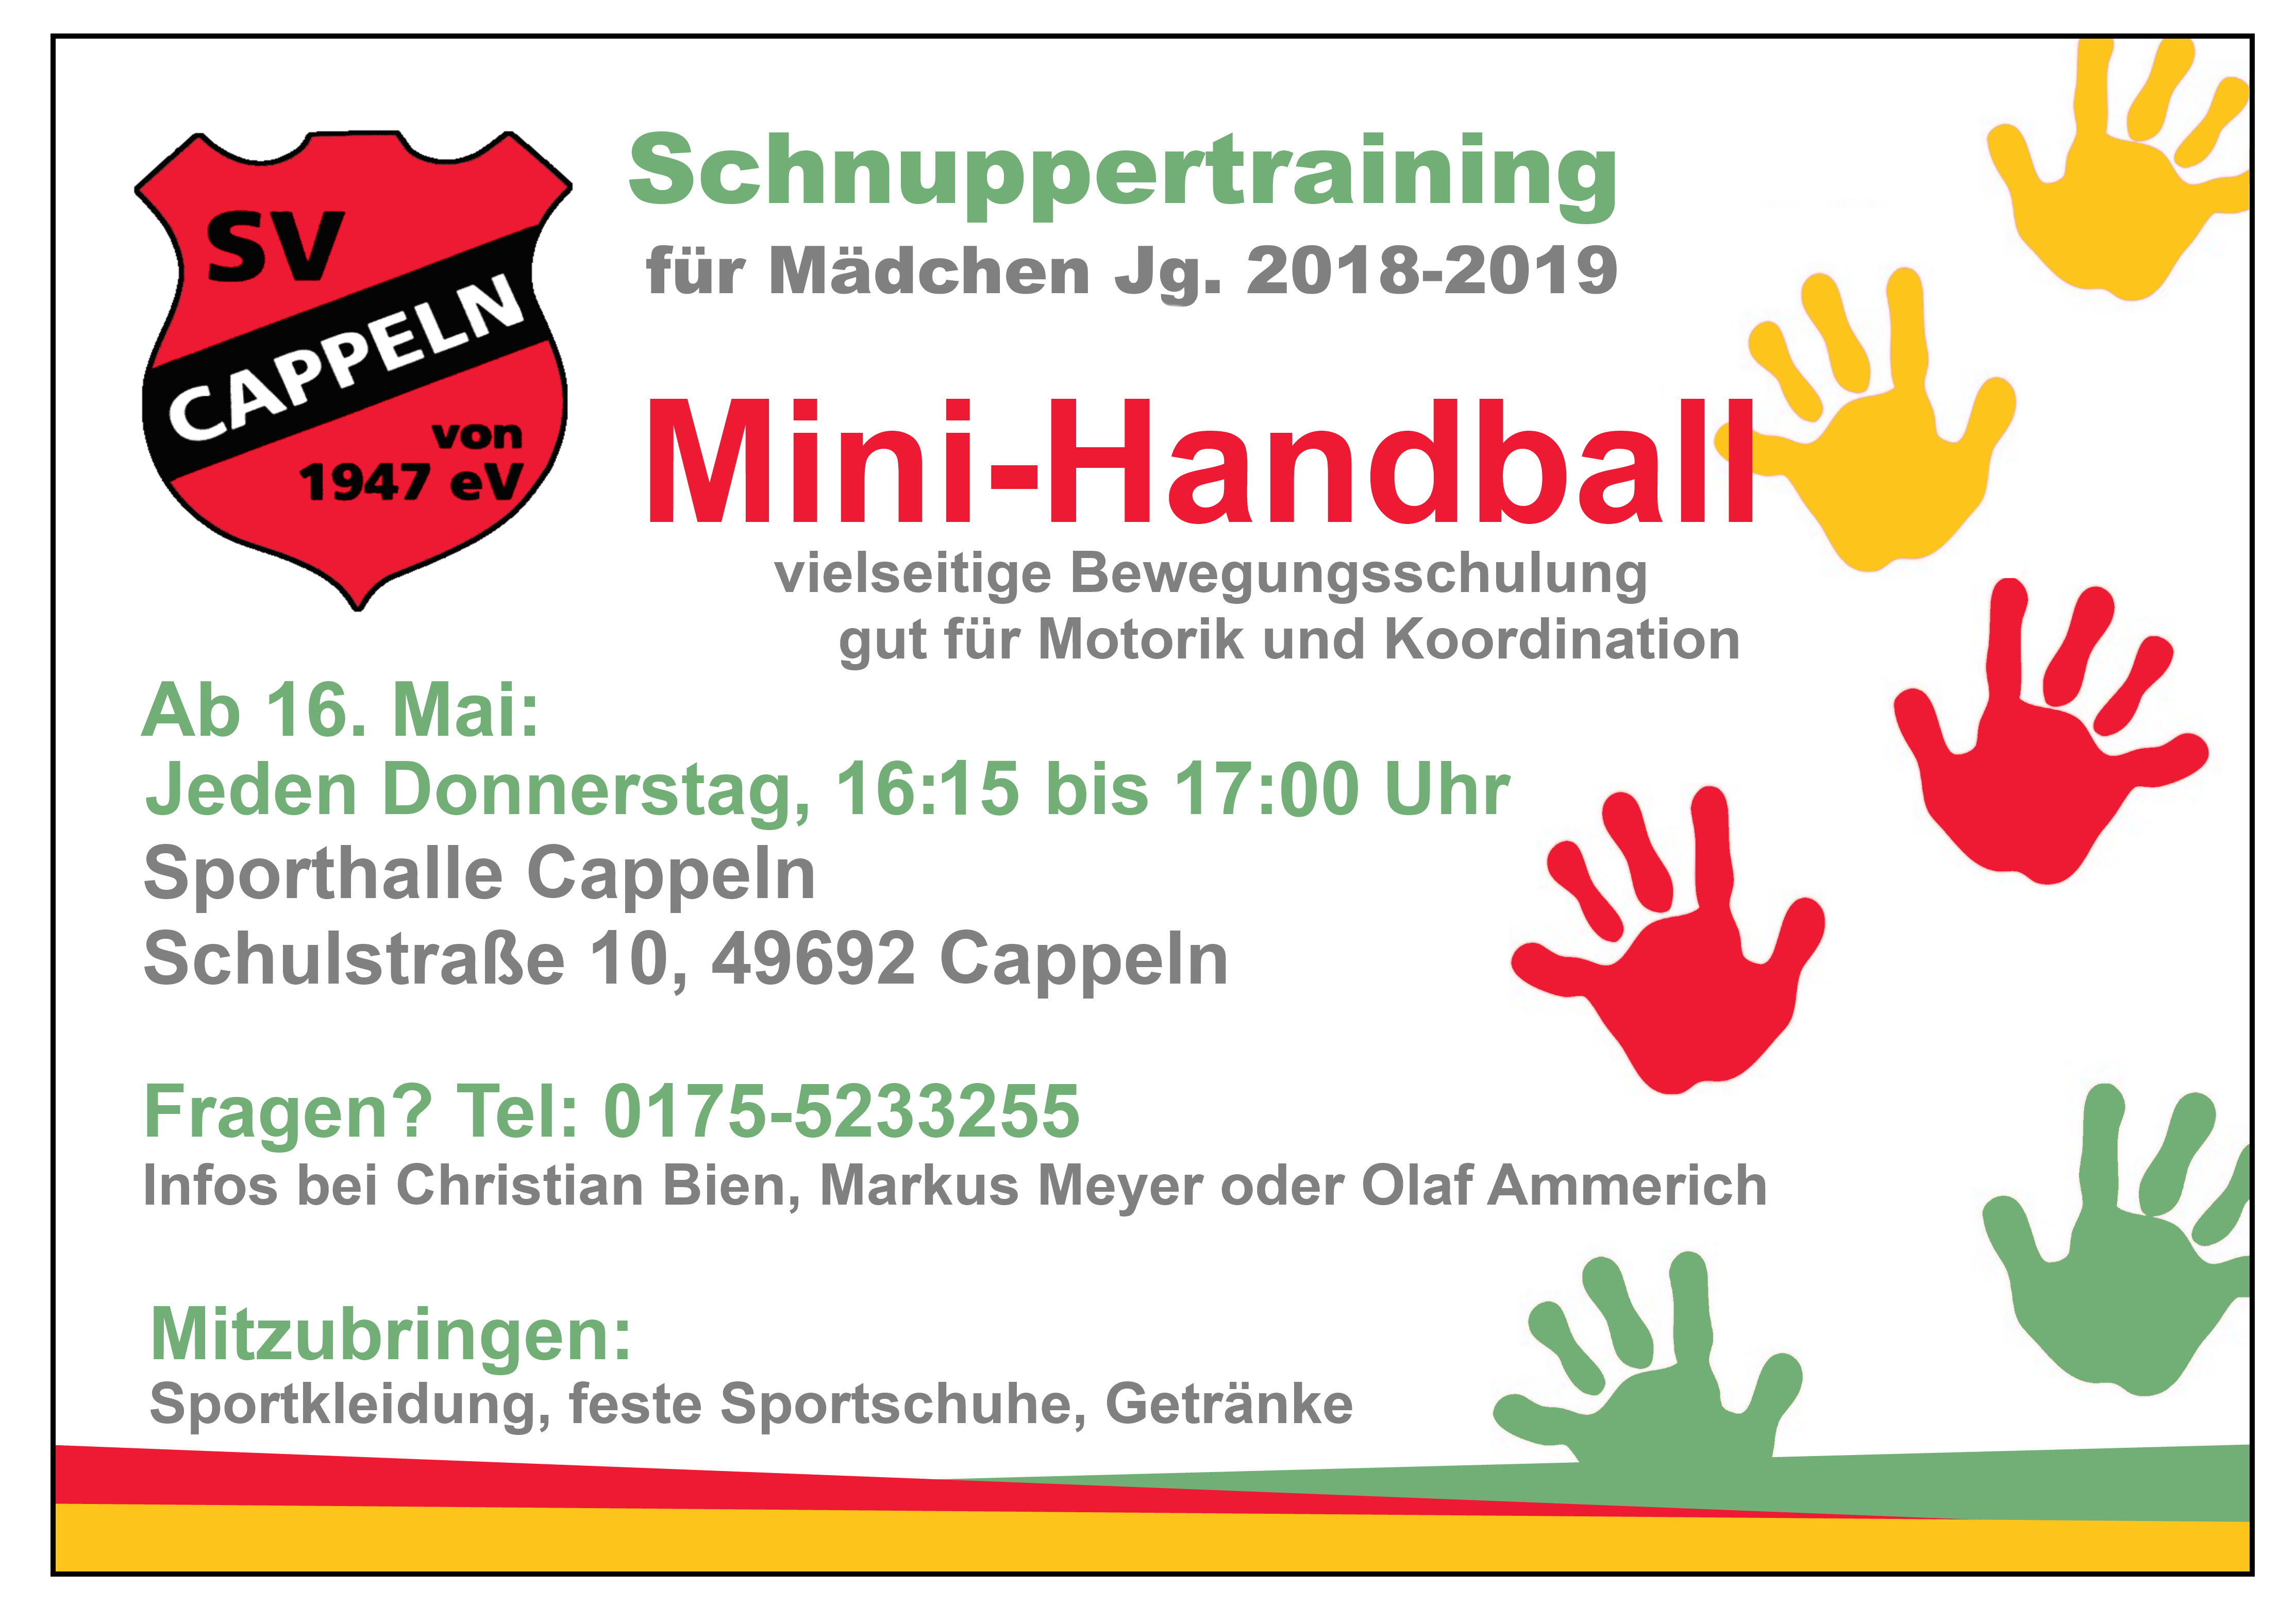 Neue Handball-Minis starten am 16. Mai